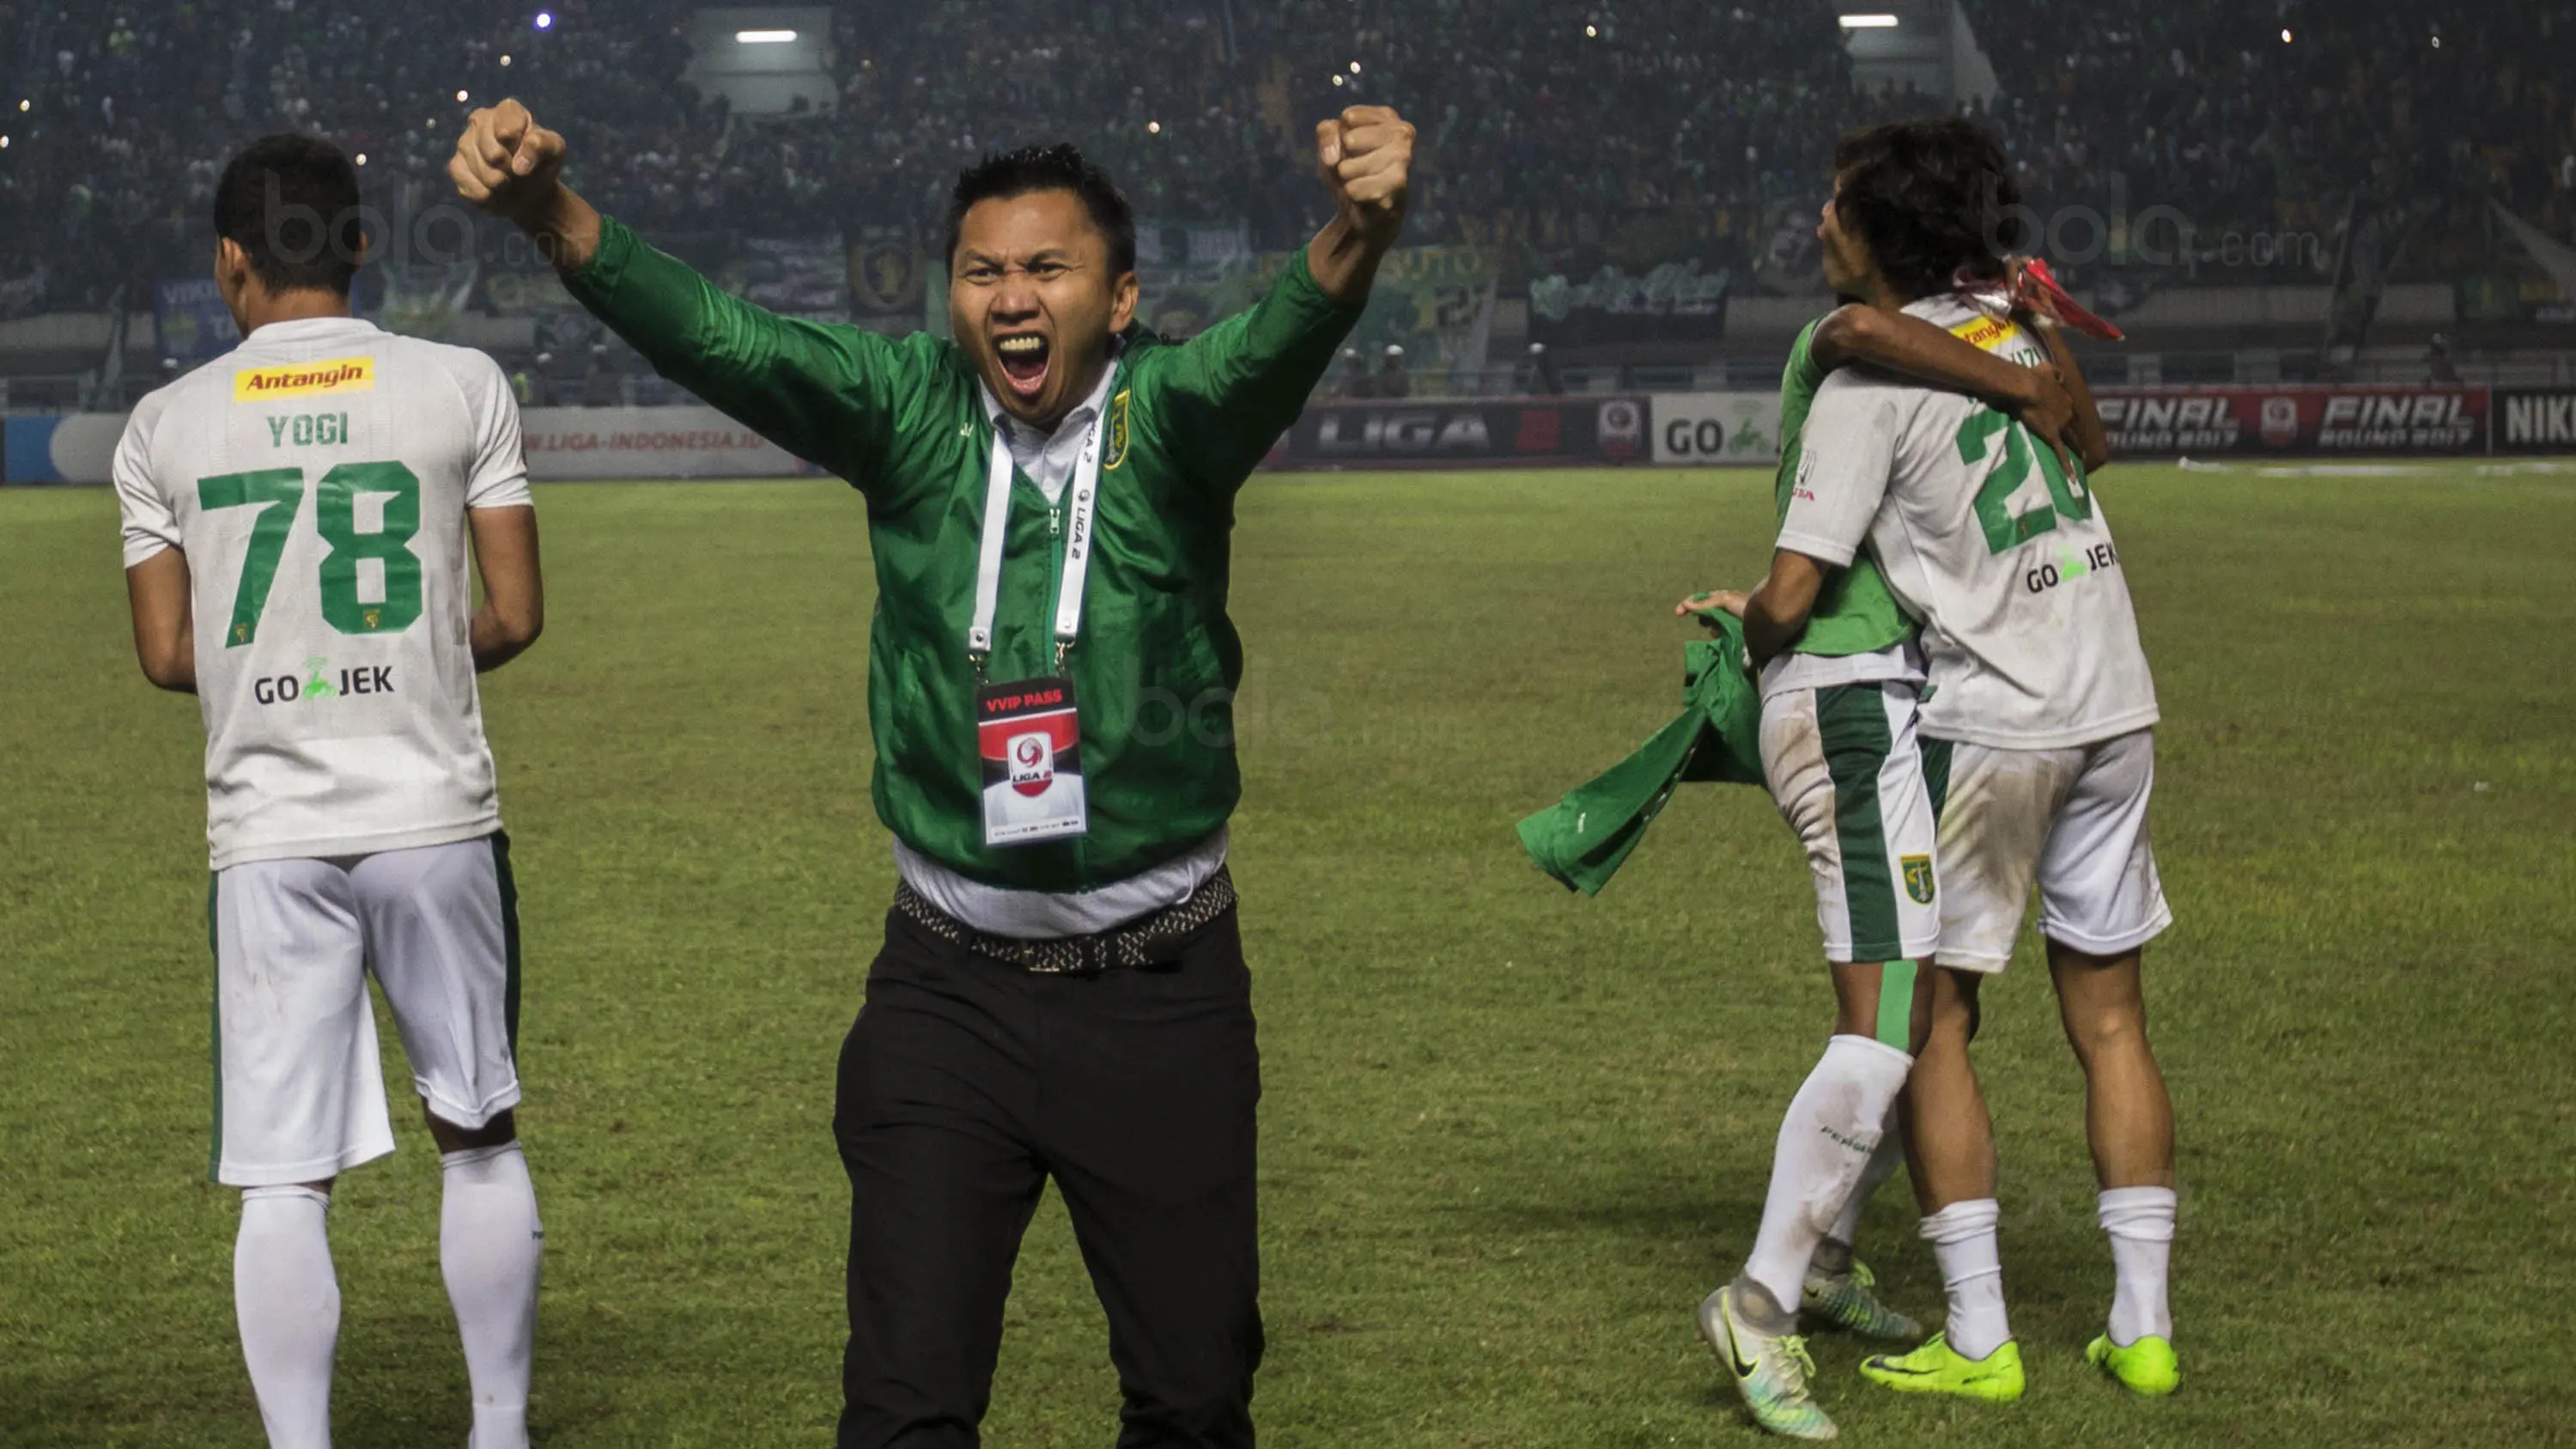 Presiden Persebaya, Azrul Ananda, merayakan keberhasilan klubnya meraih gelar juara Liga 2 usai mengalahkan PSMS pada laga final di Stadion GBLA, Bandung, Selasa (28/11/2017). Persebaya menang 3-2 atas PSMS. (Bola.com/Vitalis Yogi Trisna)